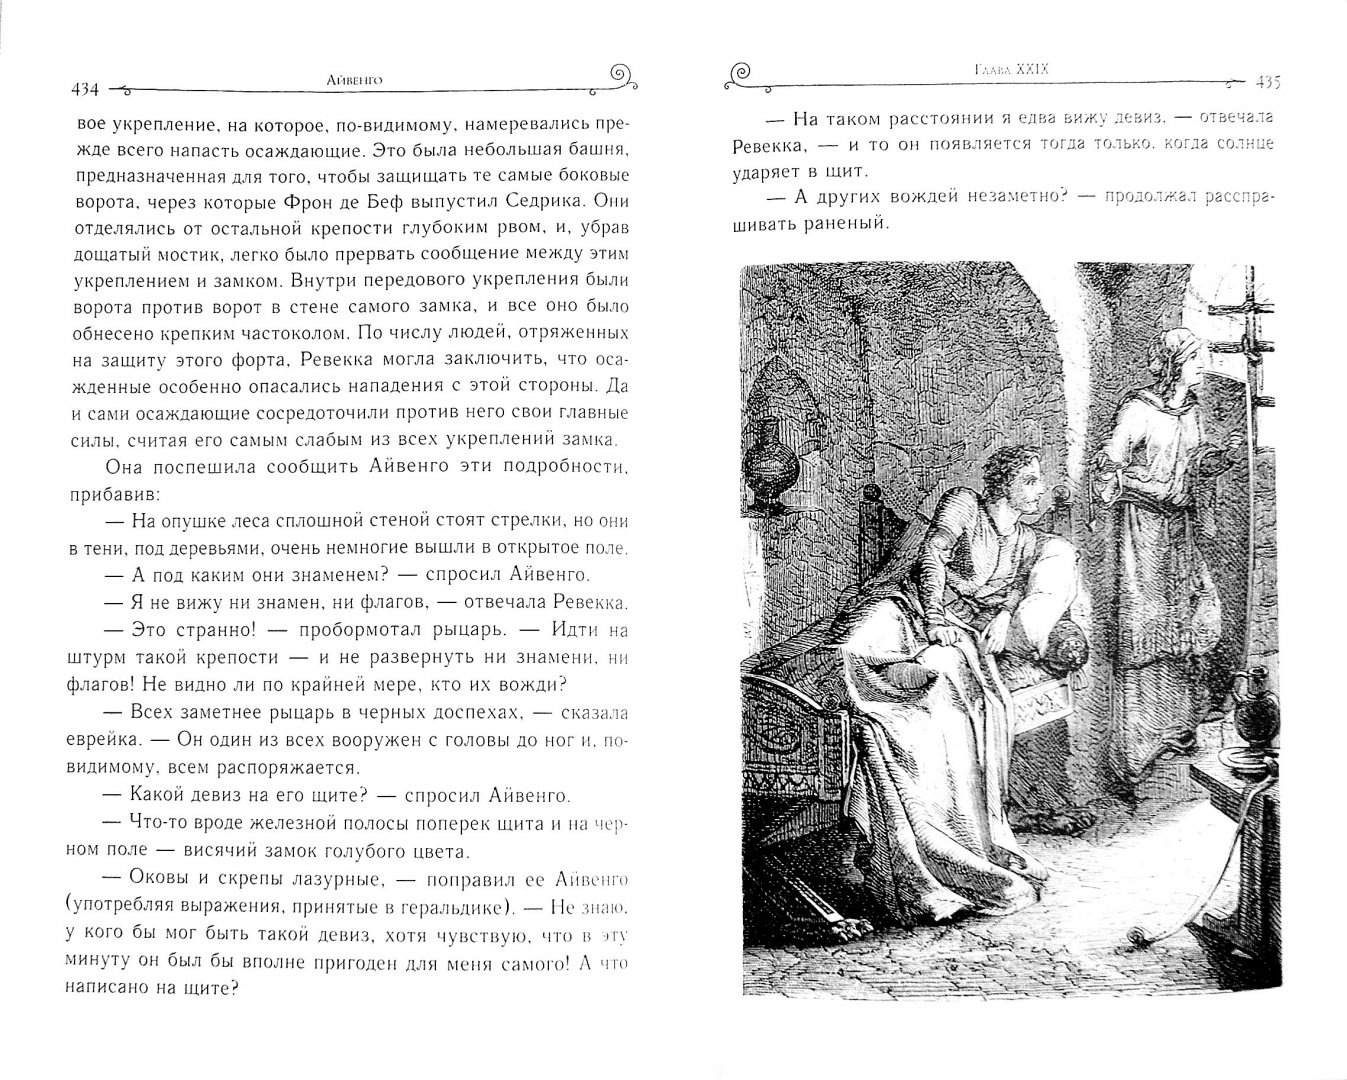 Иллюстрация 1 из 16 для Айвенго - Вальтер Скотт | Лабиринт - книги. Источник: Лабиринт